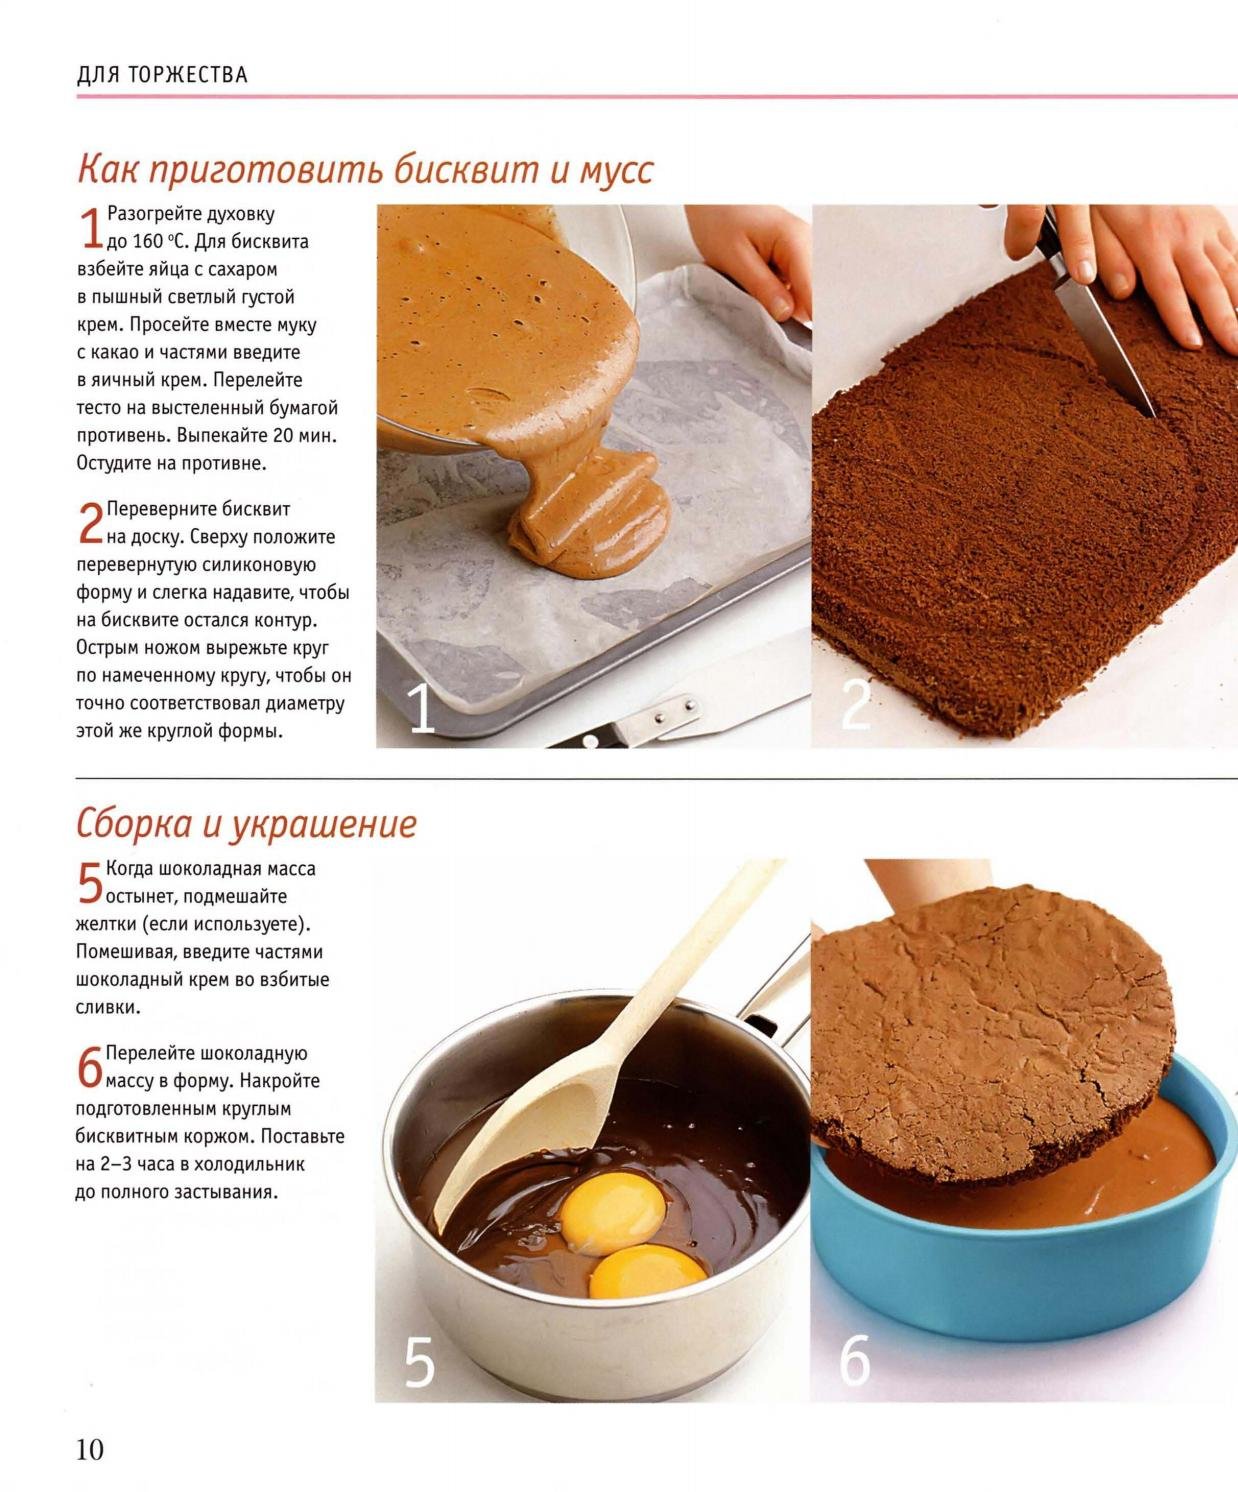 Рецепт теста для тортов в духовке. КСК приготовит бисквит. Рецепт вкусного бисквита. Рецепт бисквита для торта. Бисквит для торта в микроволновке.